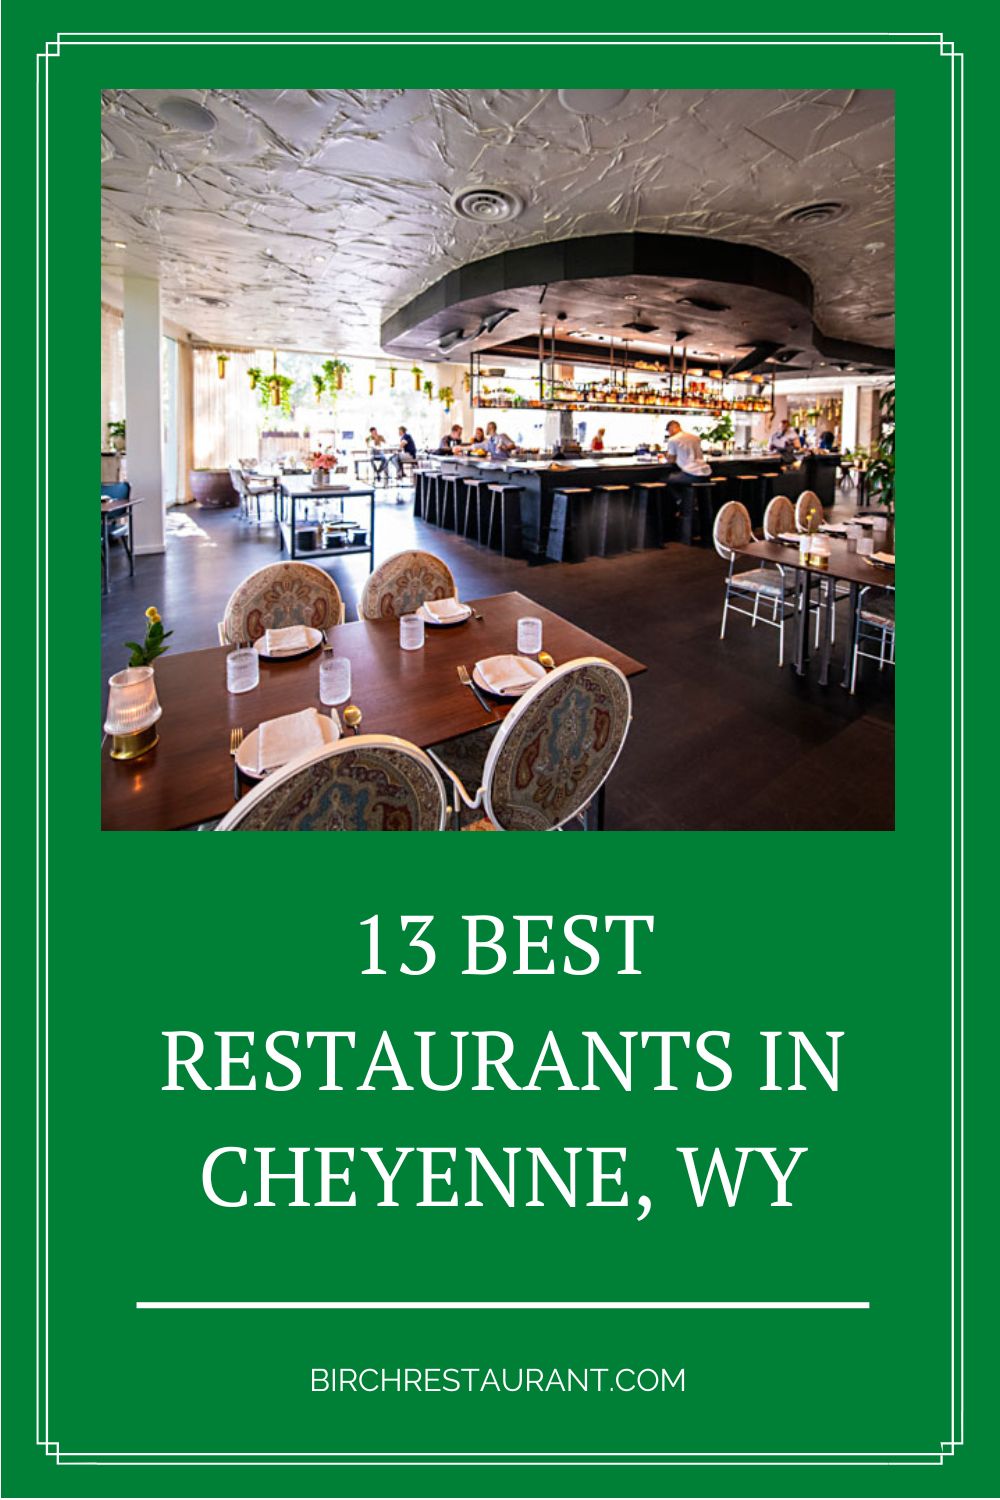 Best Restaurants in Cheyenne